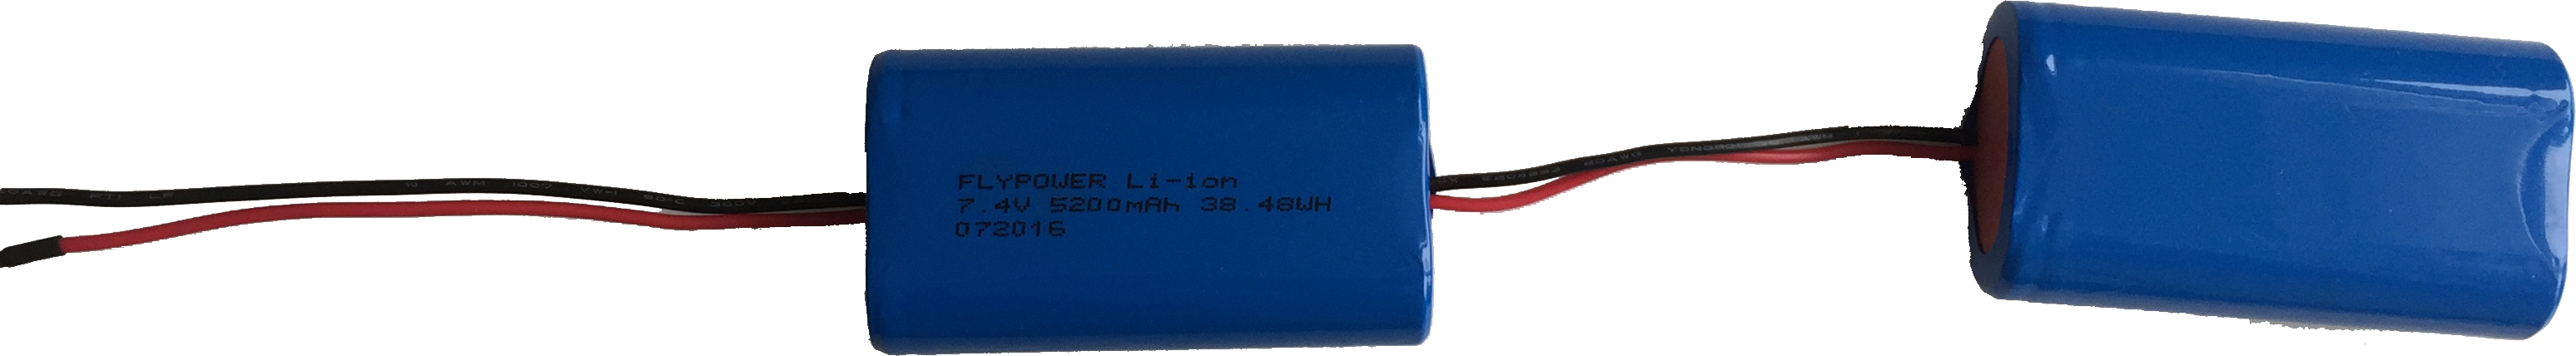 7.4V 5200mAh 18650  Li-ion battery pack for oil detection device